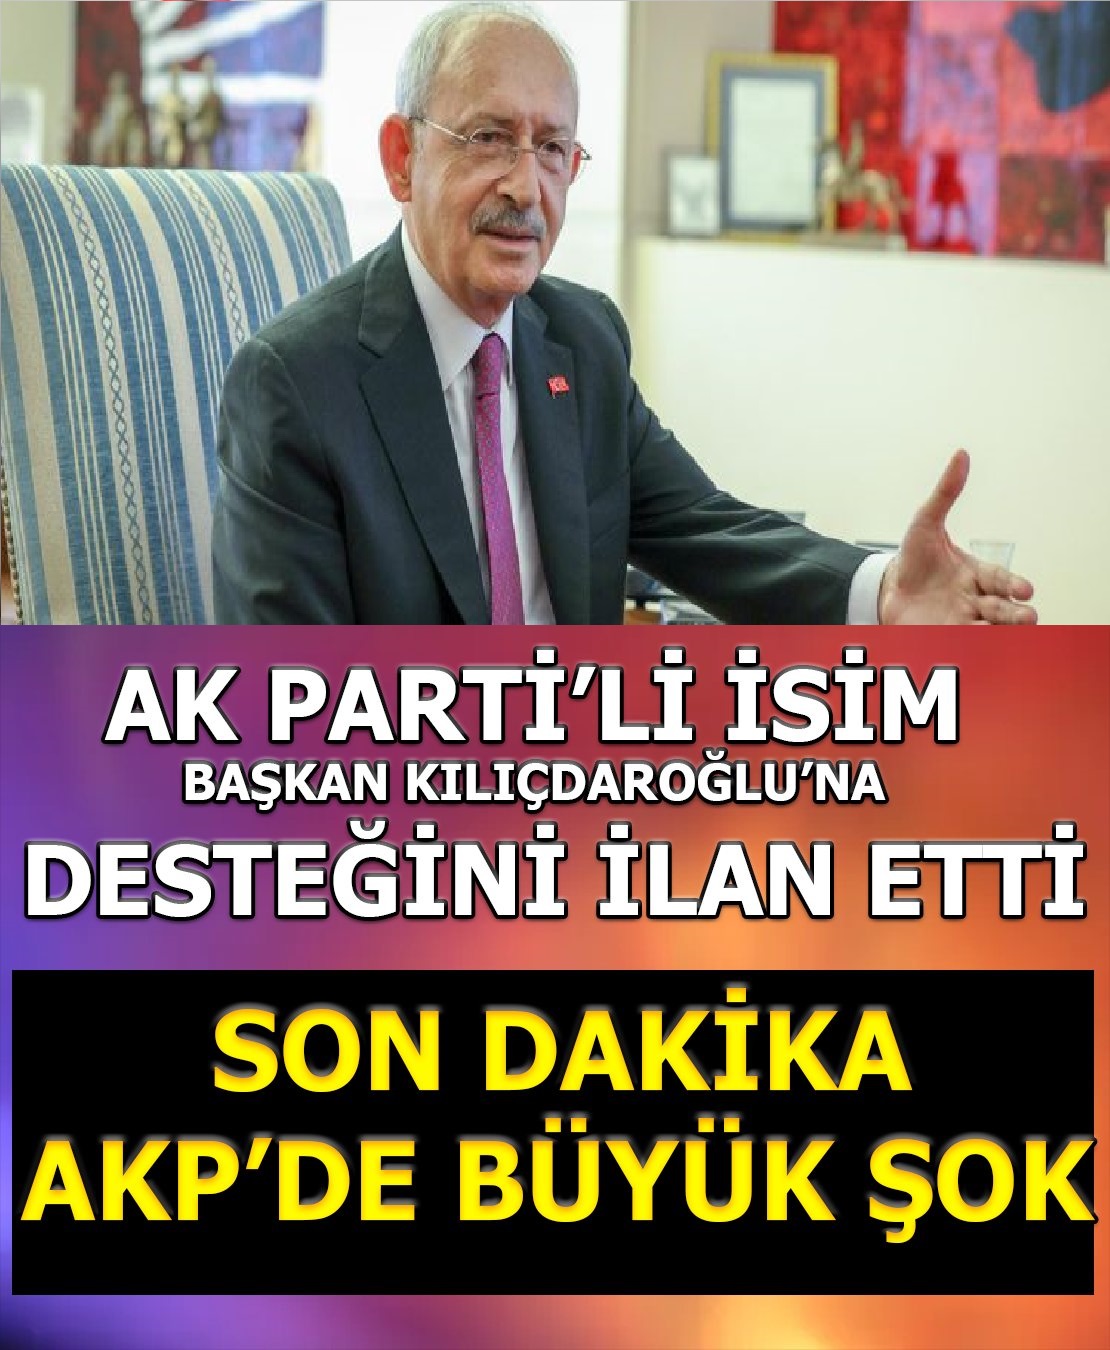 Ak Partili İsim Kılıçdaroğlunu destekleyeceğiz